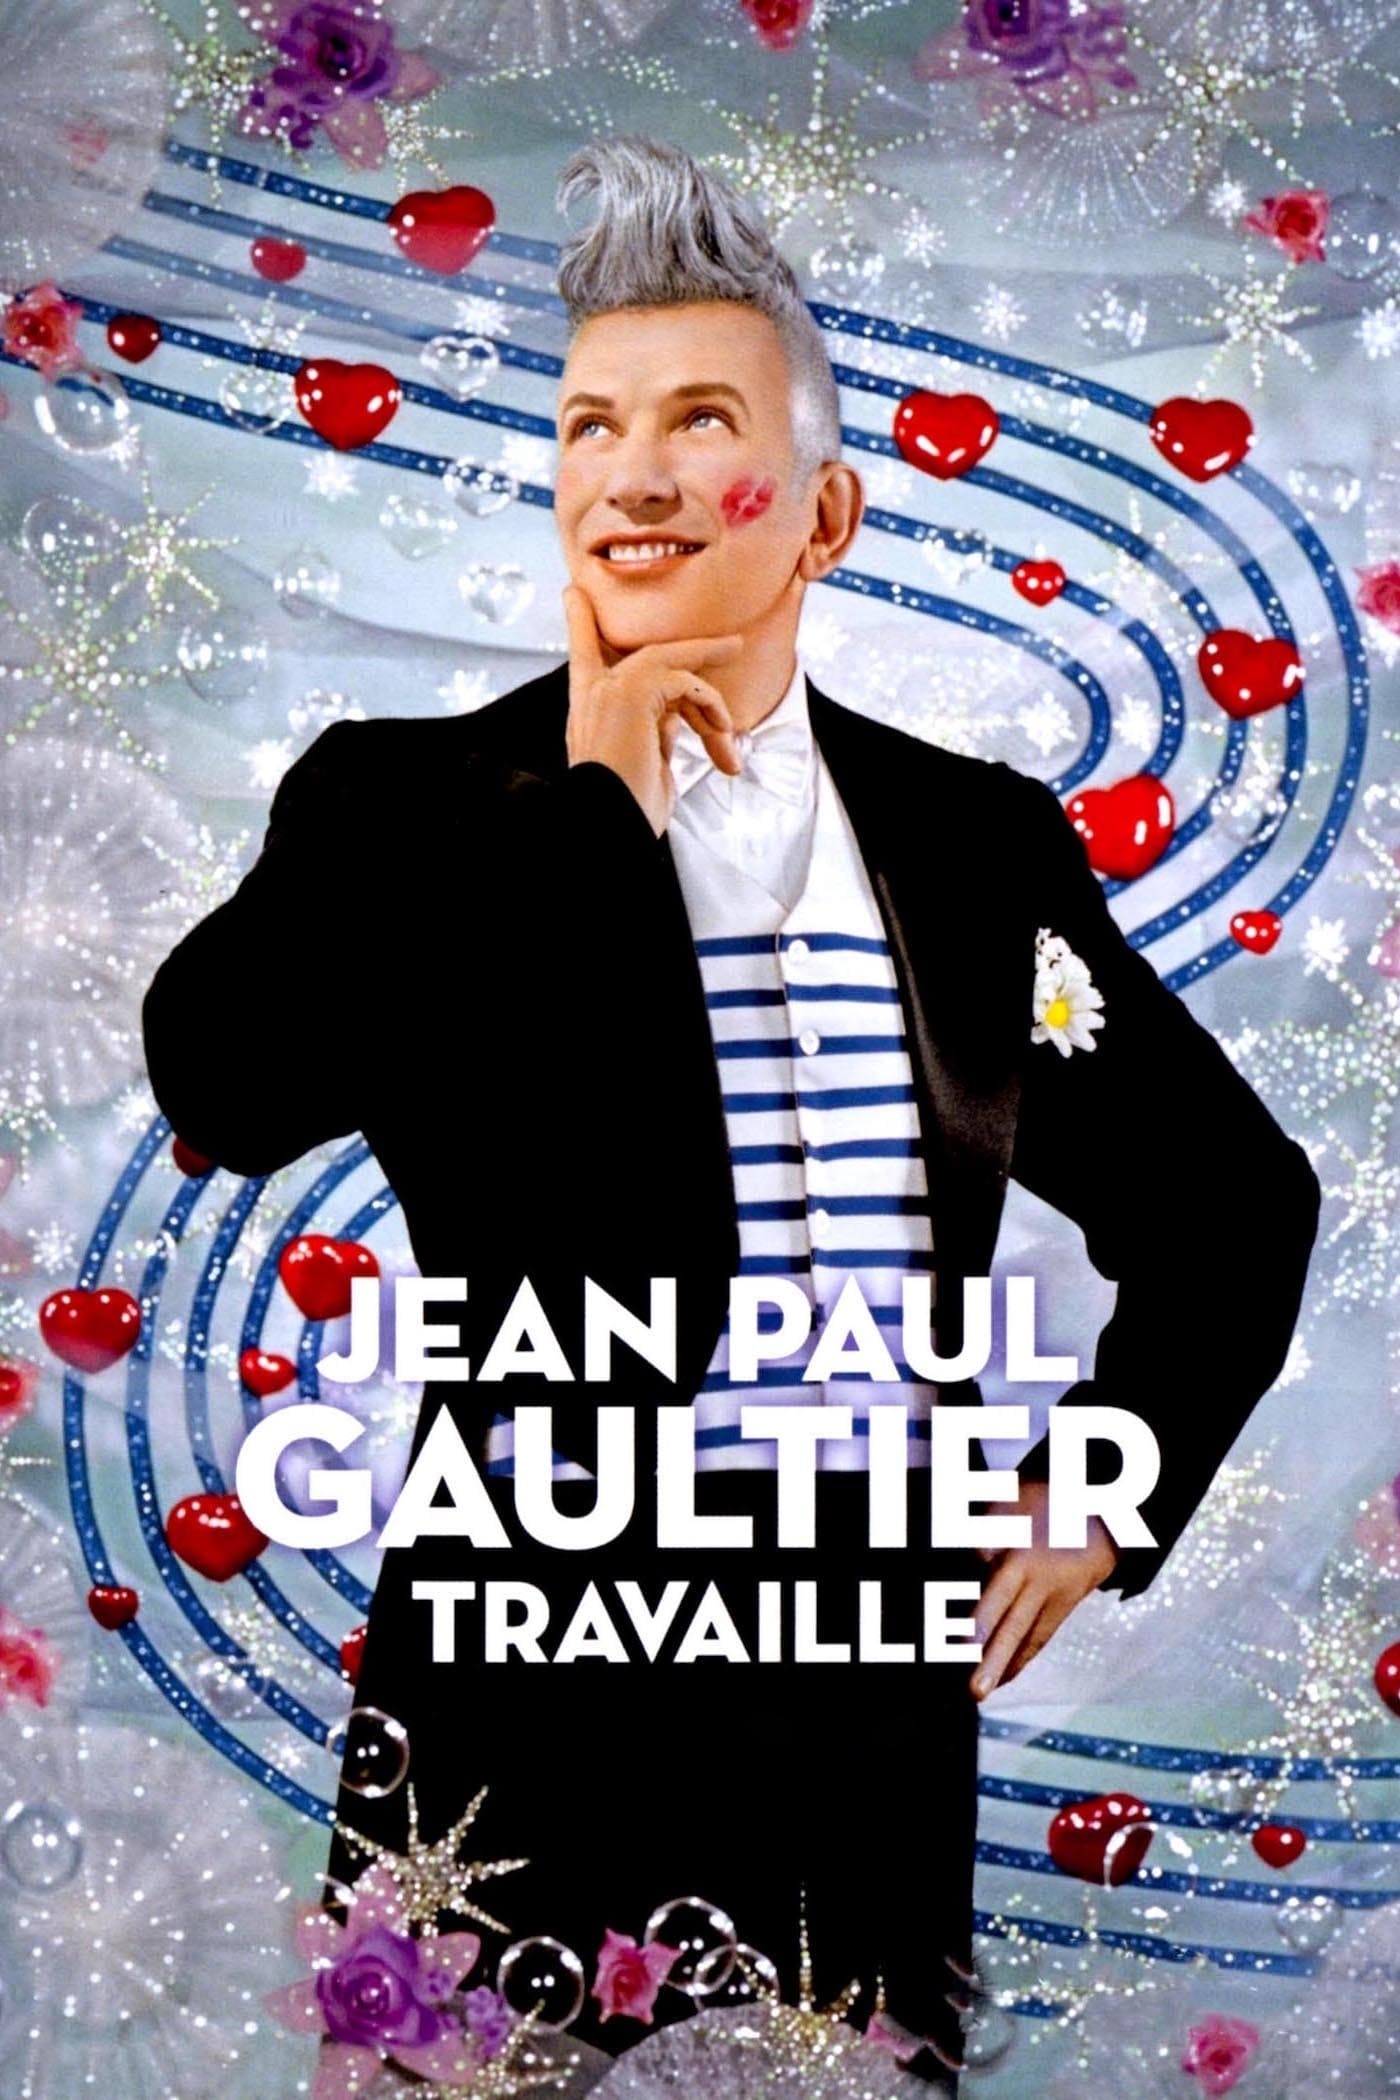 Jean Paul Gaultier en el trabajo